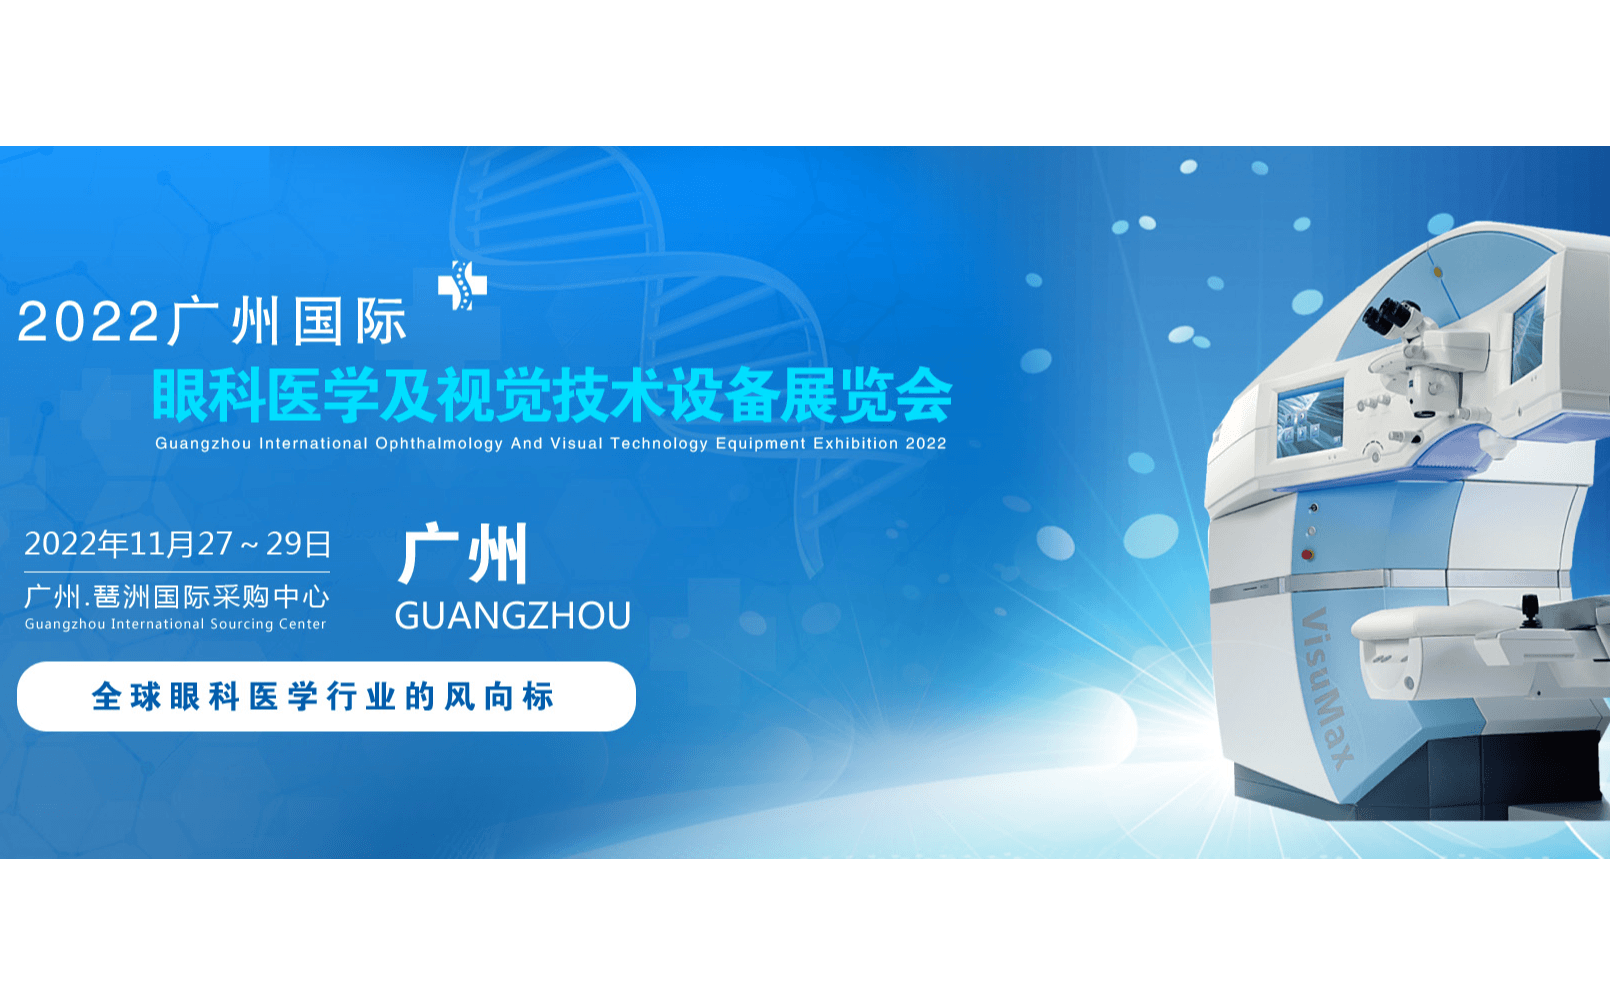 2022廣州國際眼科醫學展覽會|2022廣州視覺技術設備展覽會